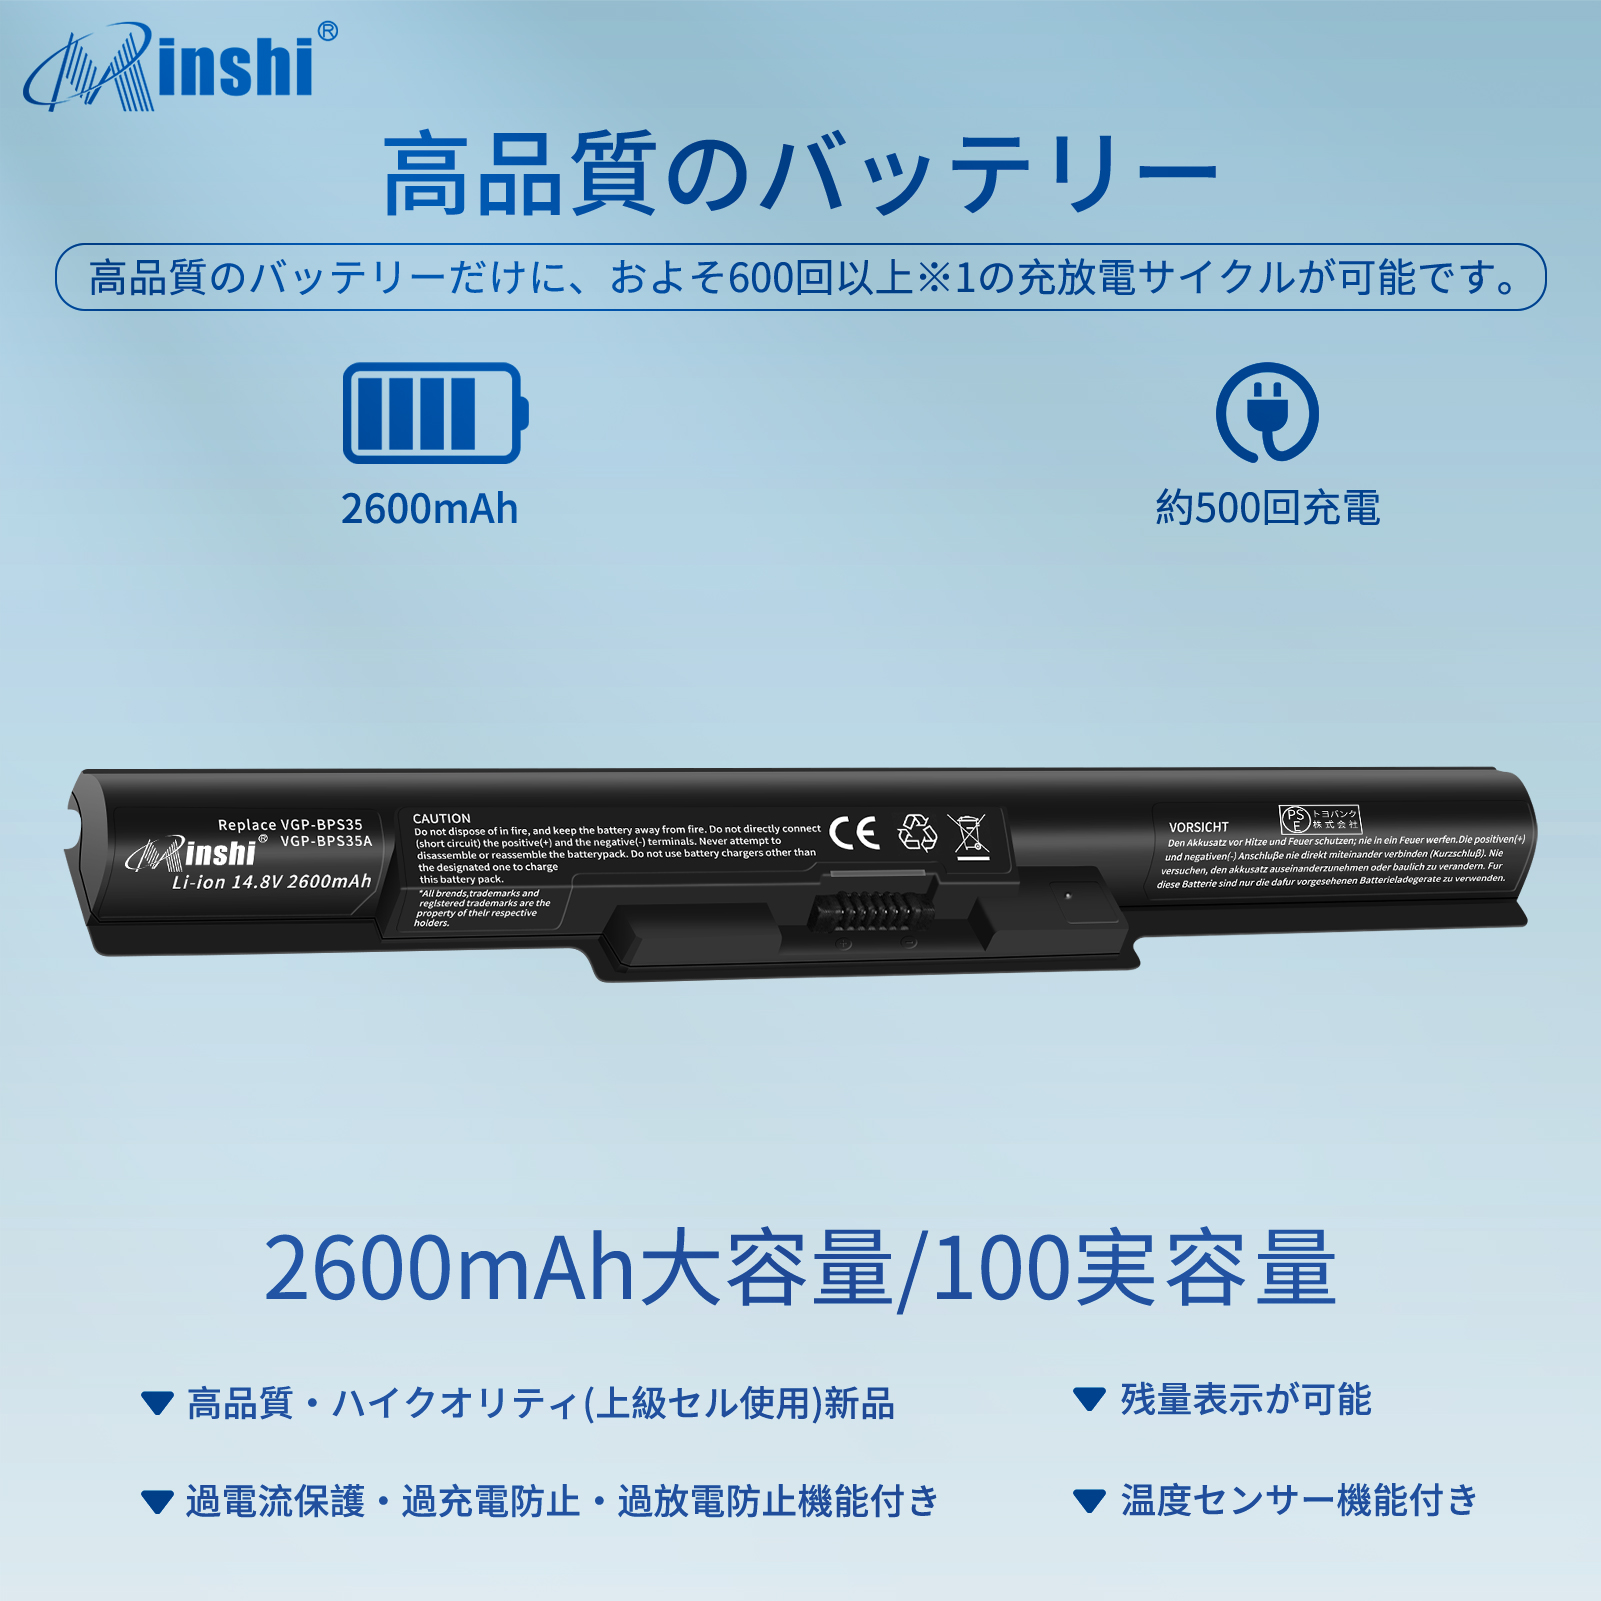  minshi SONY F1421AYCB VJ8BPS35A  対応 VJ8BPS35A 2600mAh  高品質交換用バッテリー